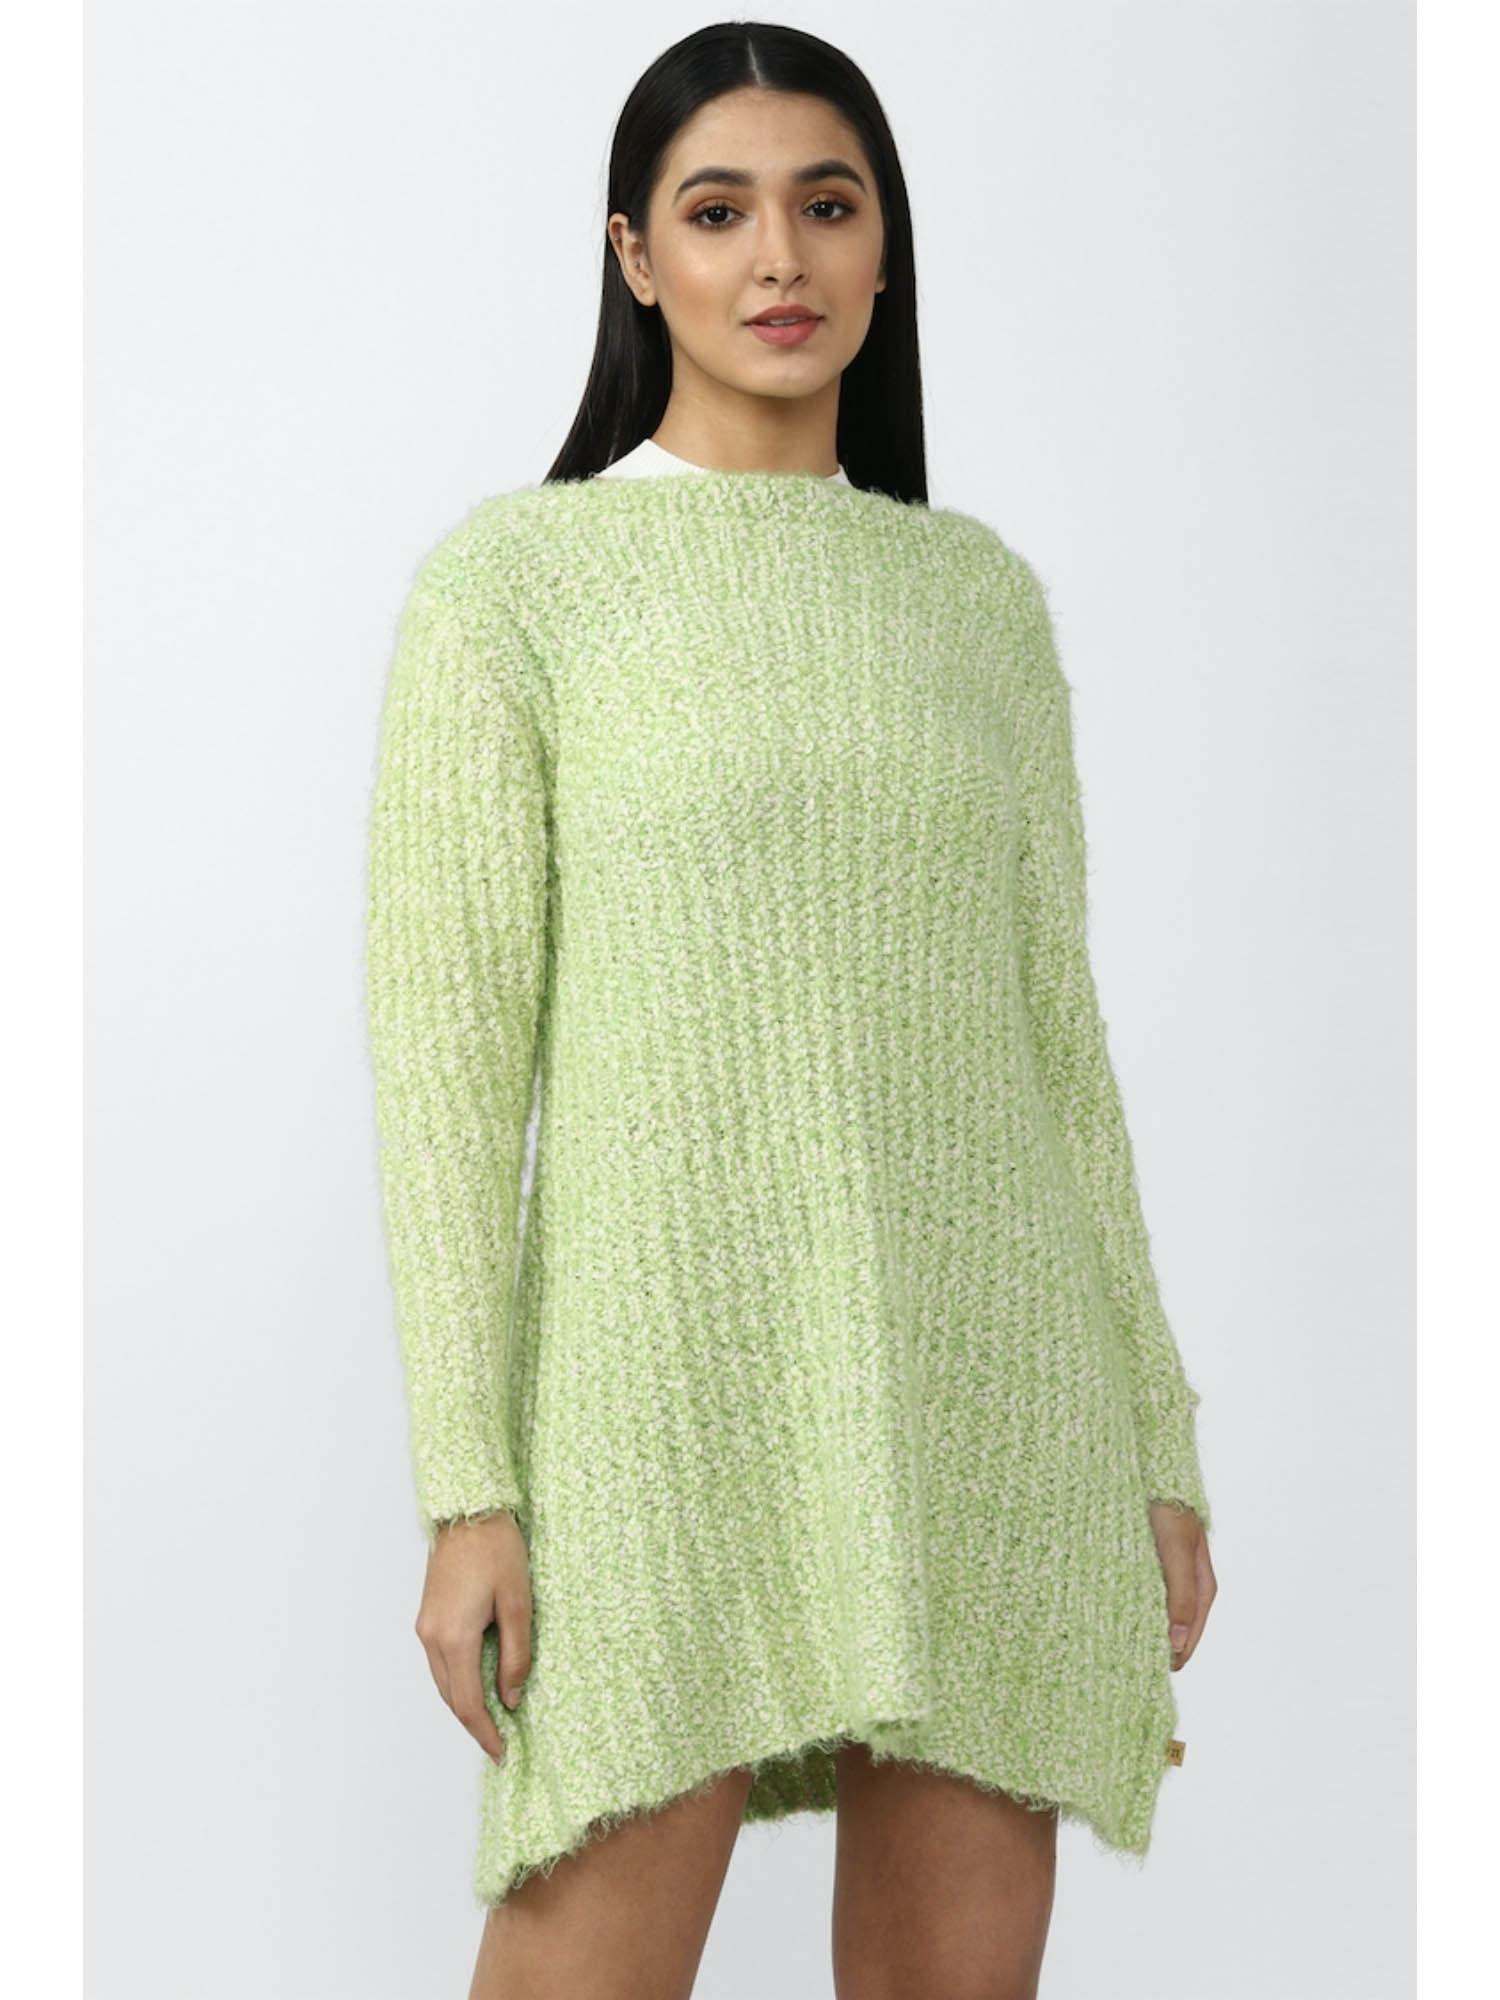 women textured green sweater